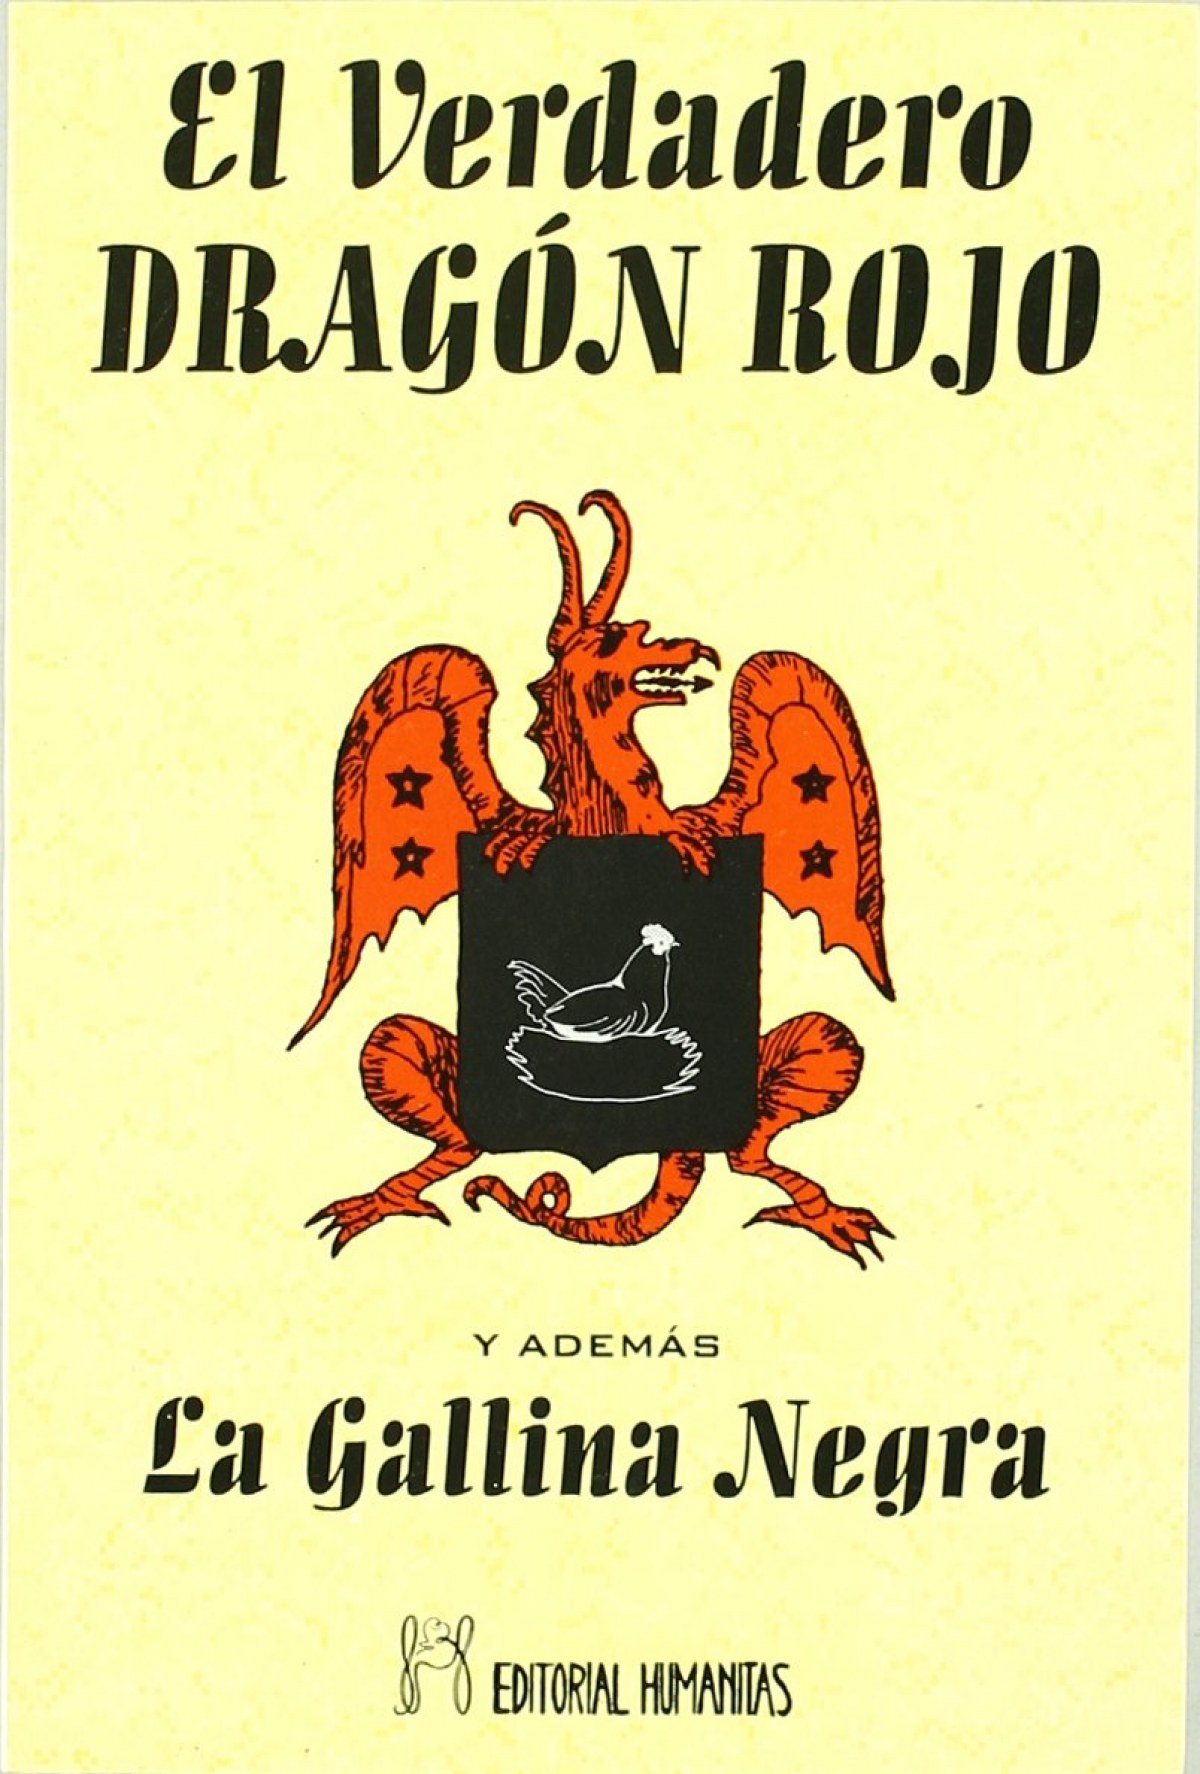 Libro De Magia El Dragón Rojo Para Descargar Gratis En Pdf / Libro El Dragon Rojo Mercadolibre ...